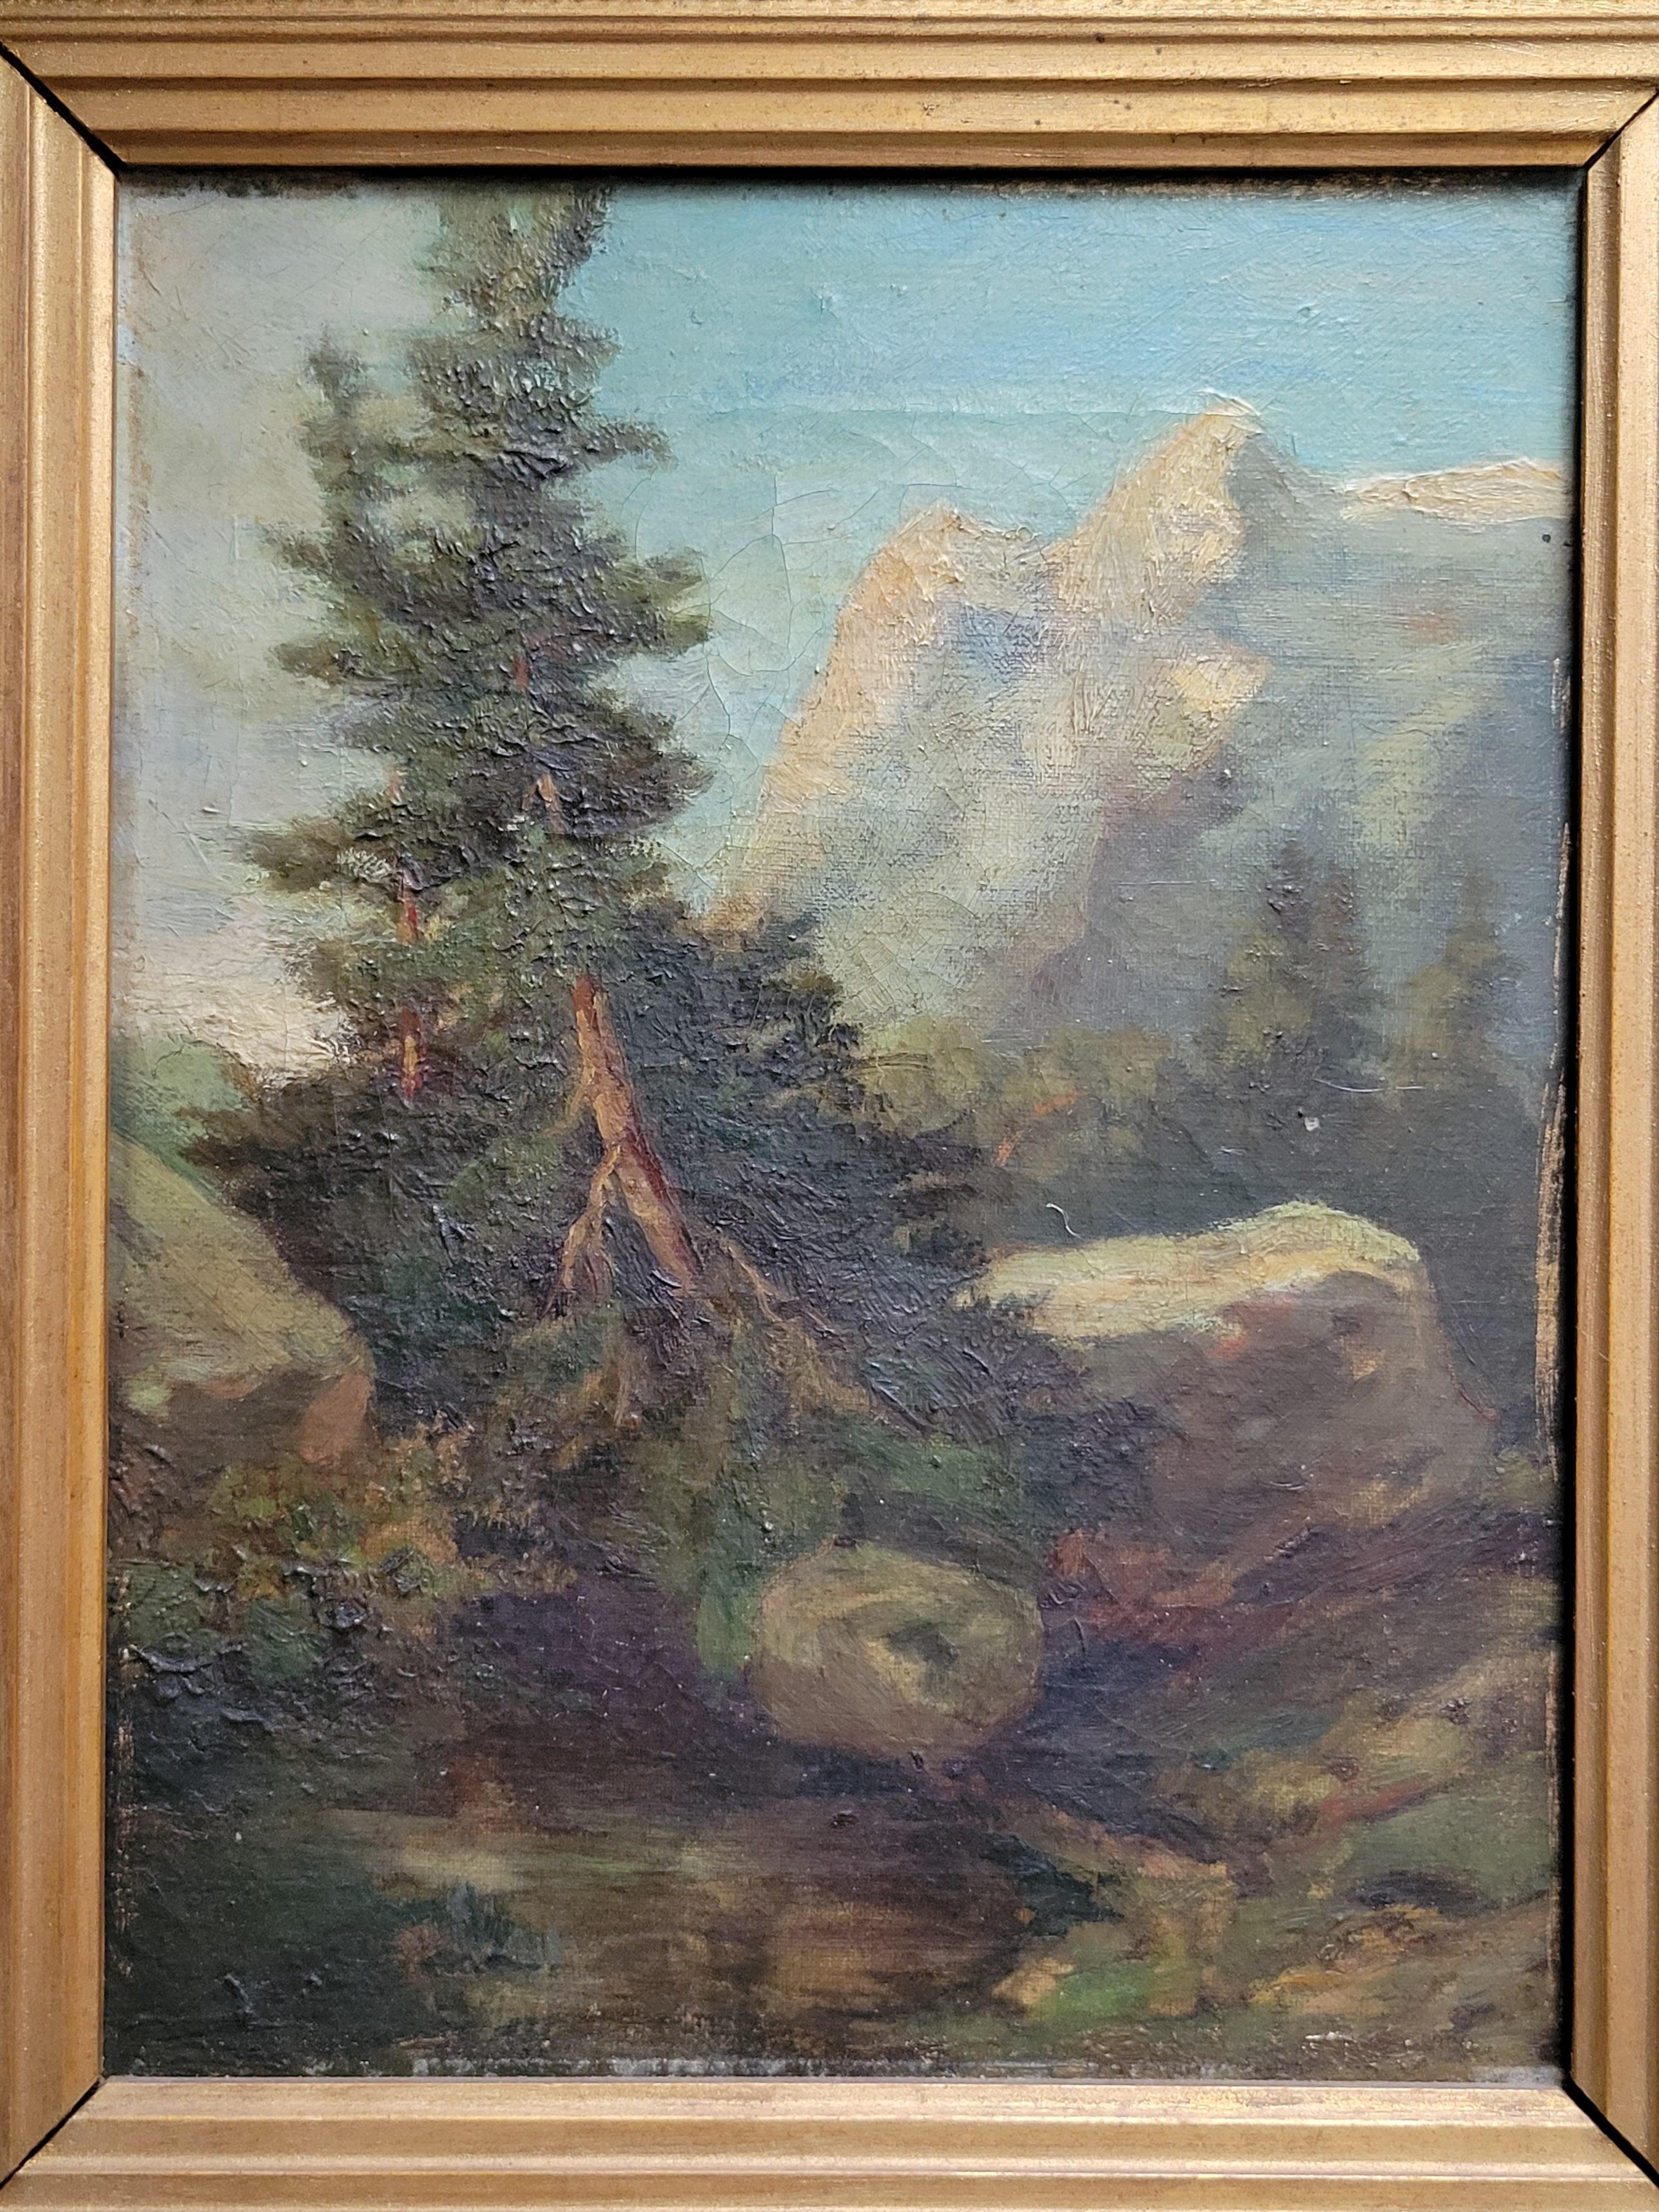 Charmante huile sur toile des années 1920 représentant une scène de montagne dans un cadre d'époque. Bien que l'œuvre soit bien exécutée, elle n'est pas signée. Le tableau a été collectionné en France, donc vraisemblablement français, mais ce n'est